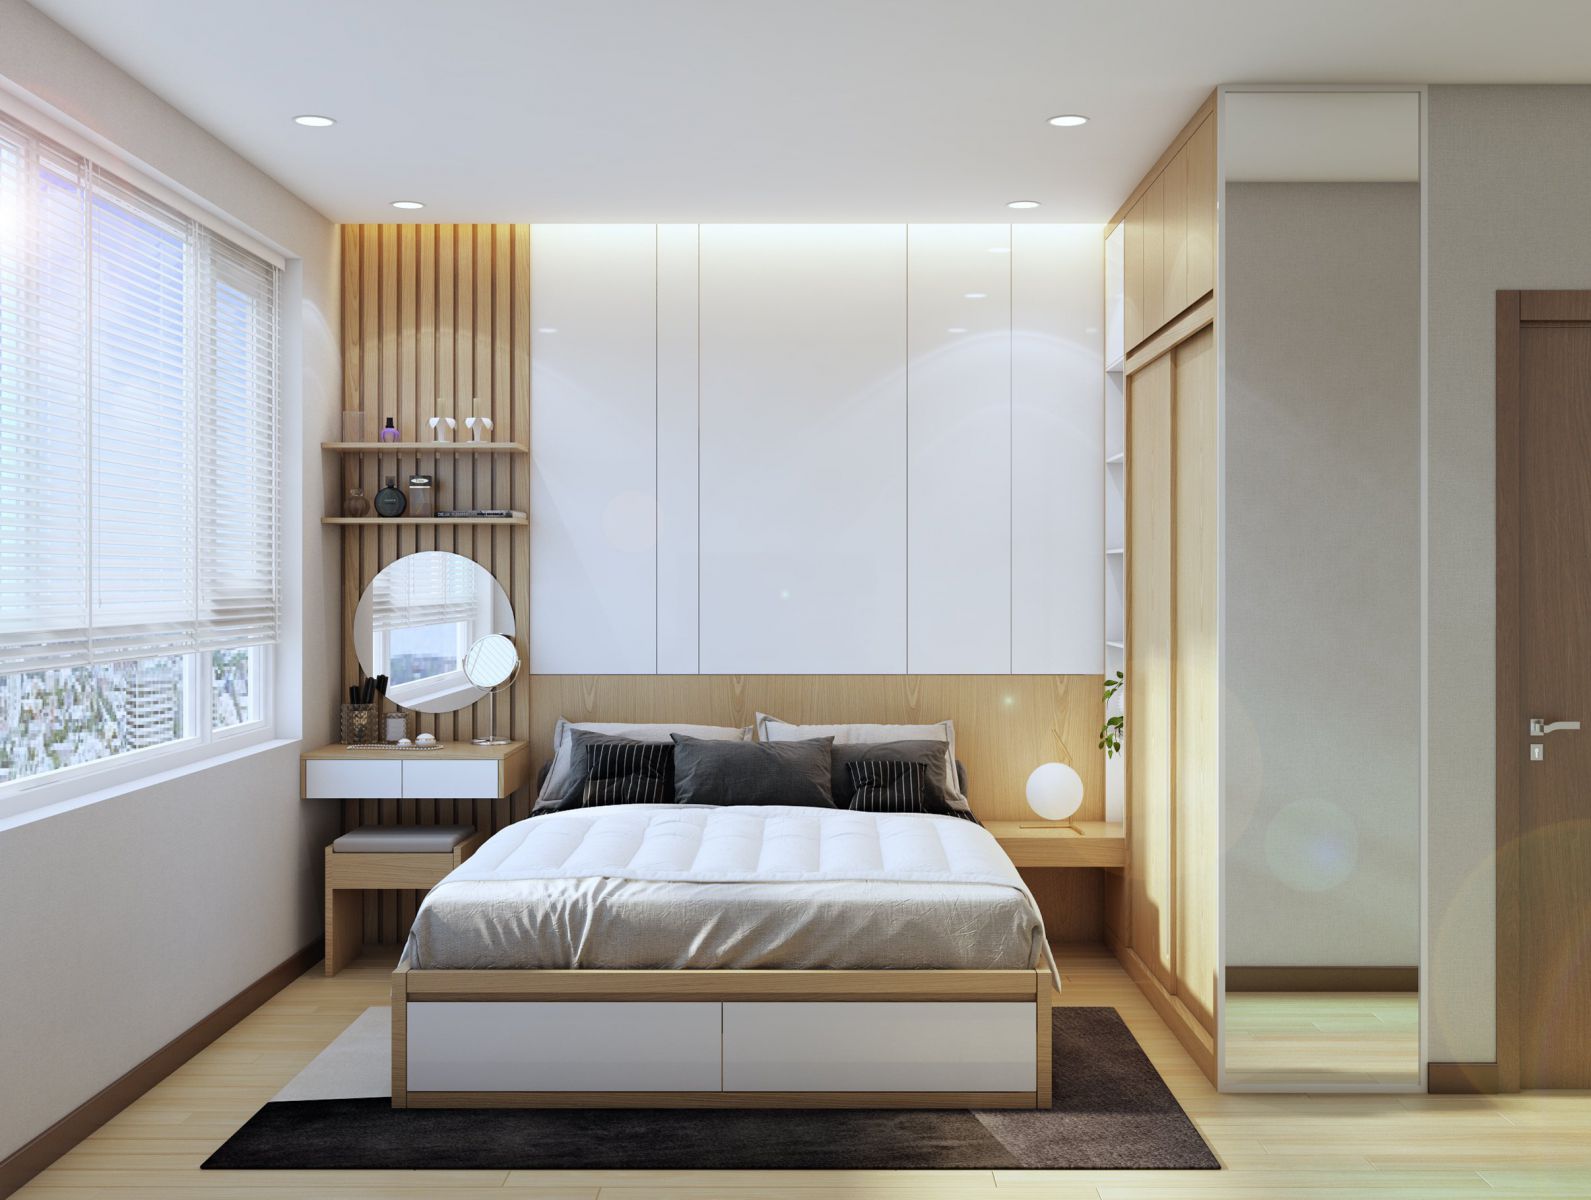 Thiết kế phòng ngủ tông màu trắng